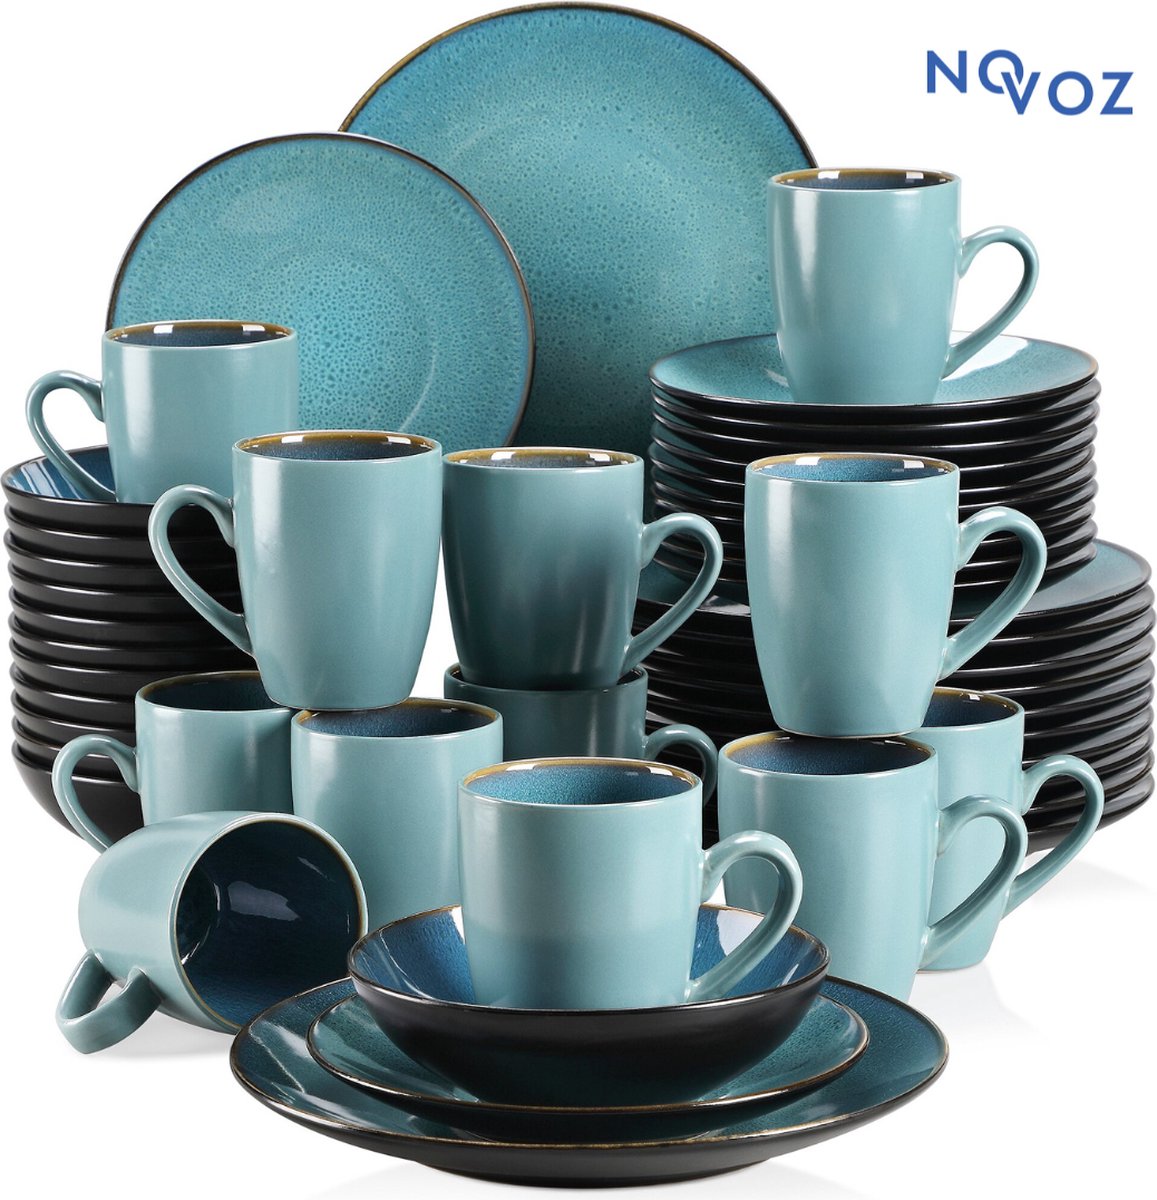 Service de table Novoz - 8 personnes - Porcelaine - 32 pièces